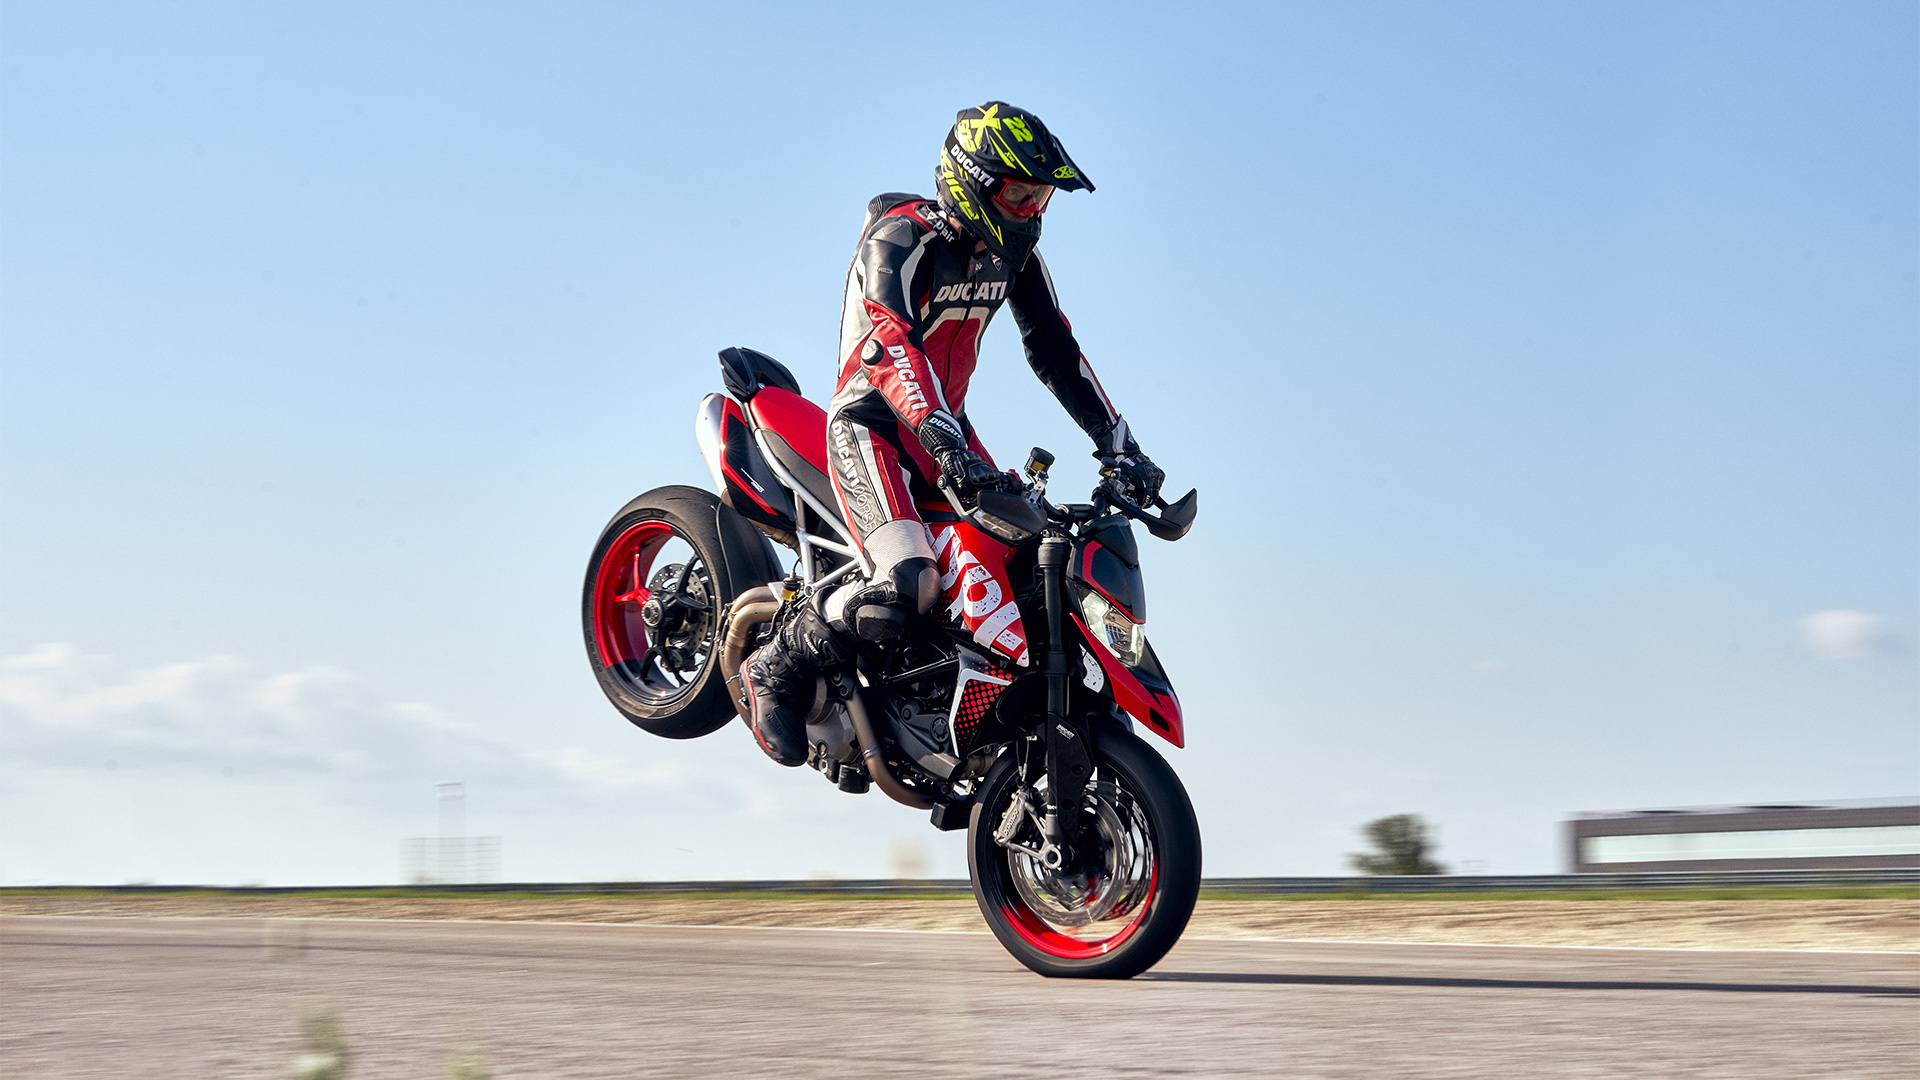 Ducati Hypermotard 950, 2021 model release, Motorrad Center MHR, Innovative design, 1920x1080 Full HD Desktop